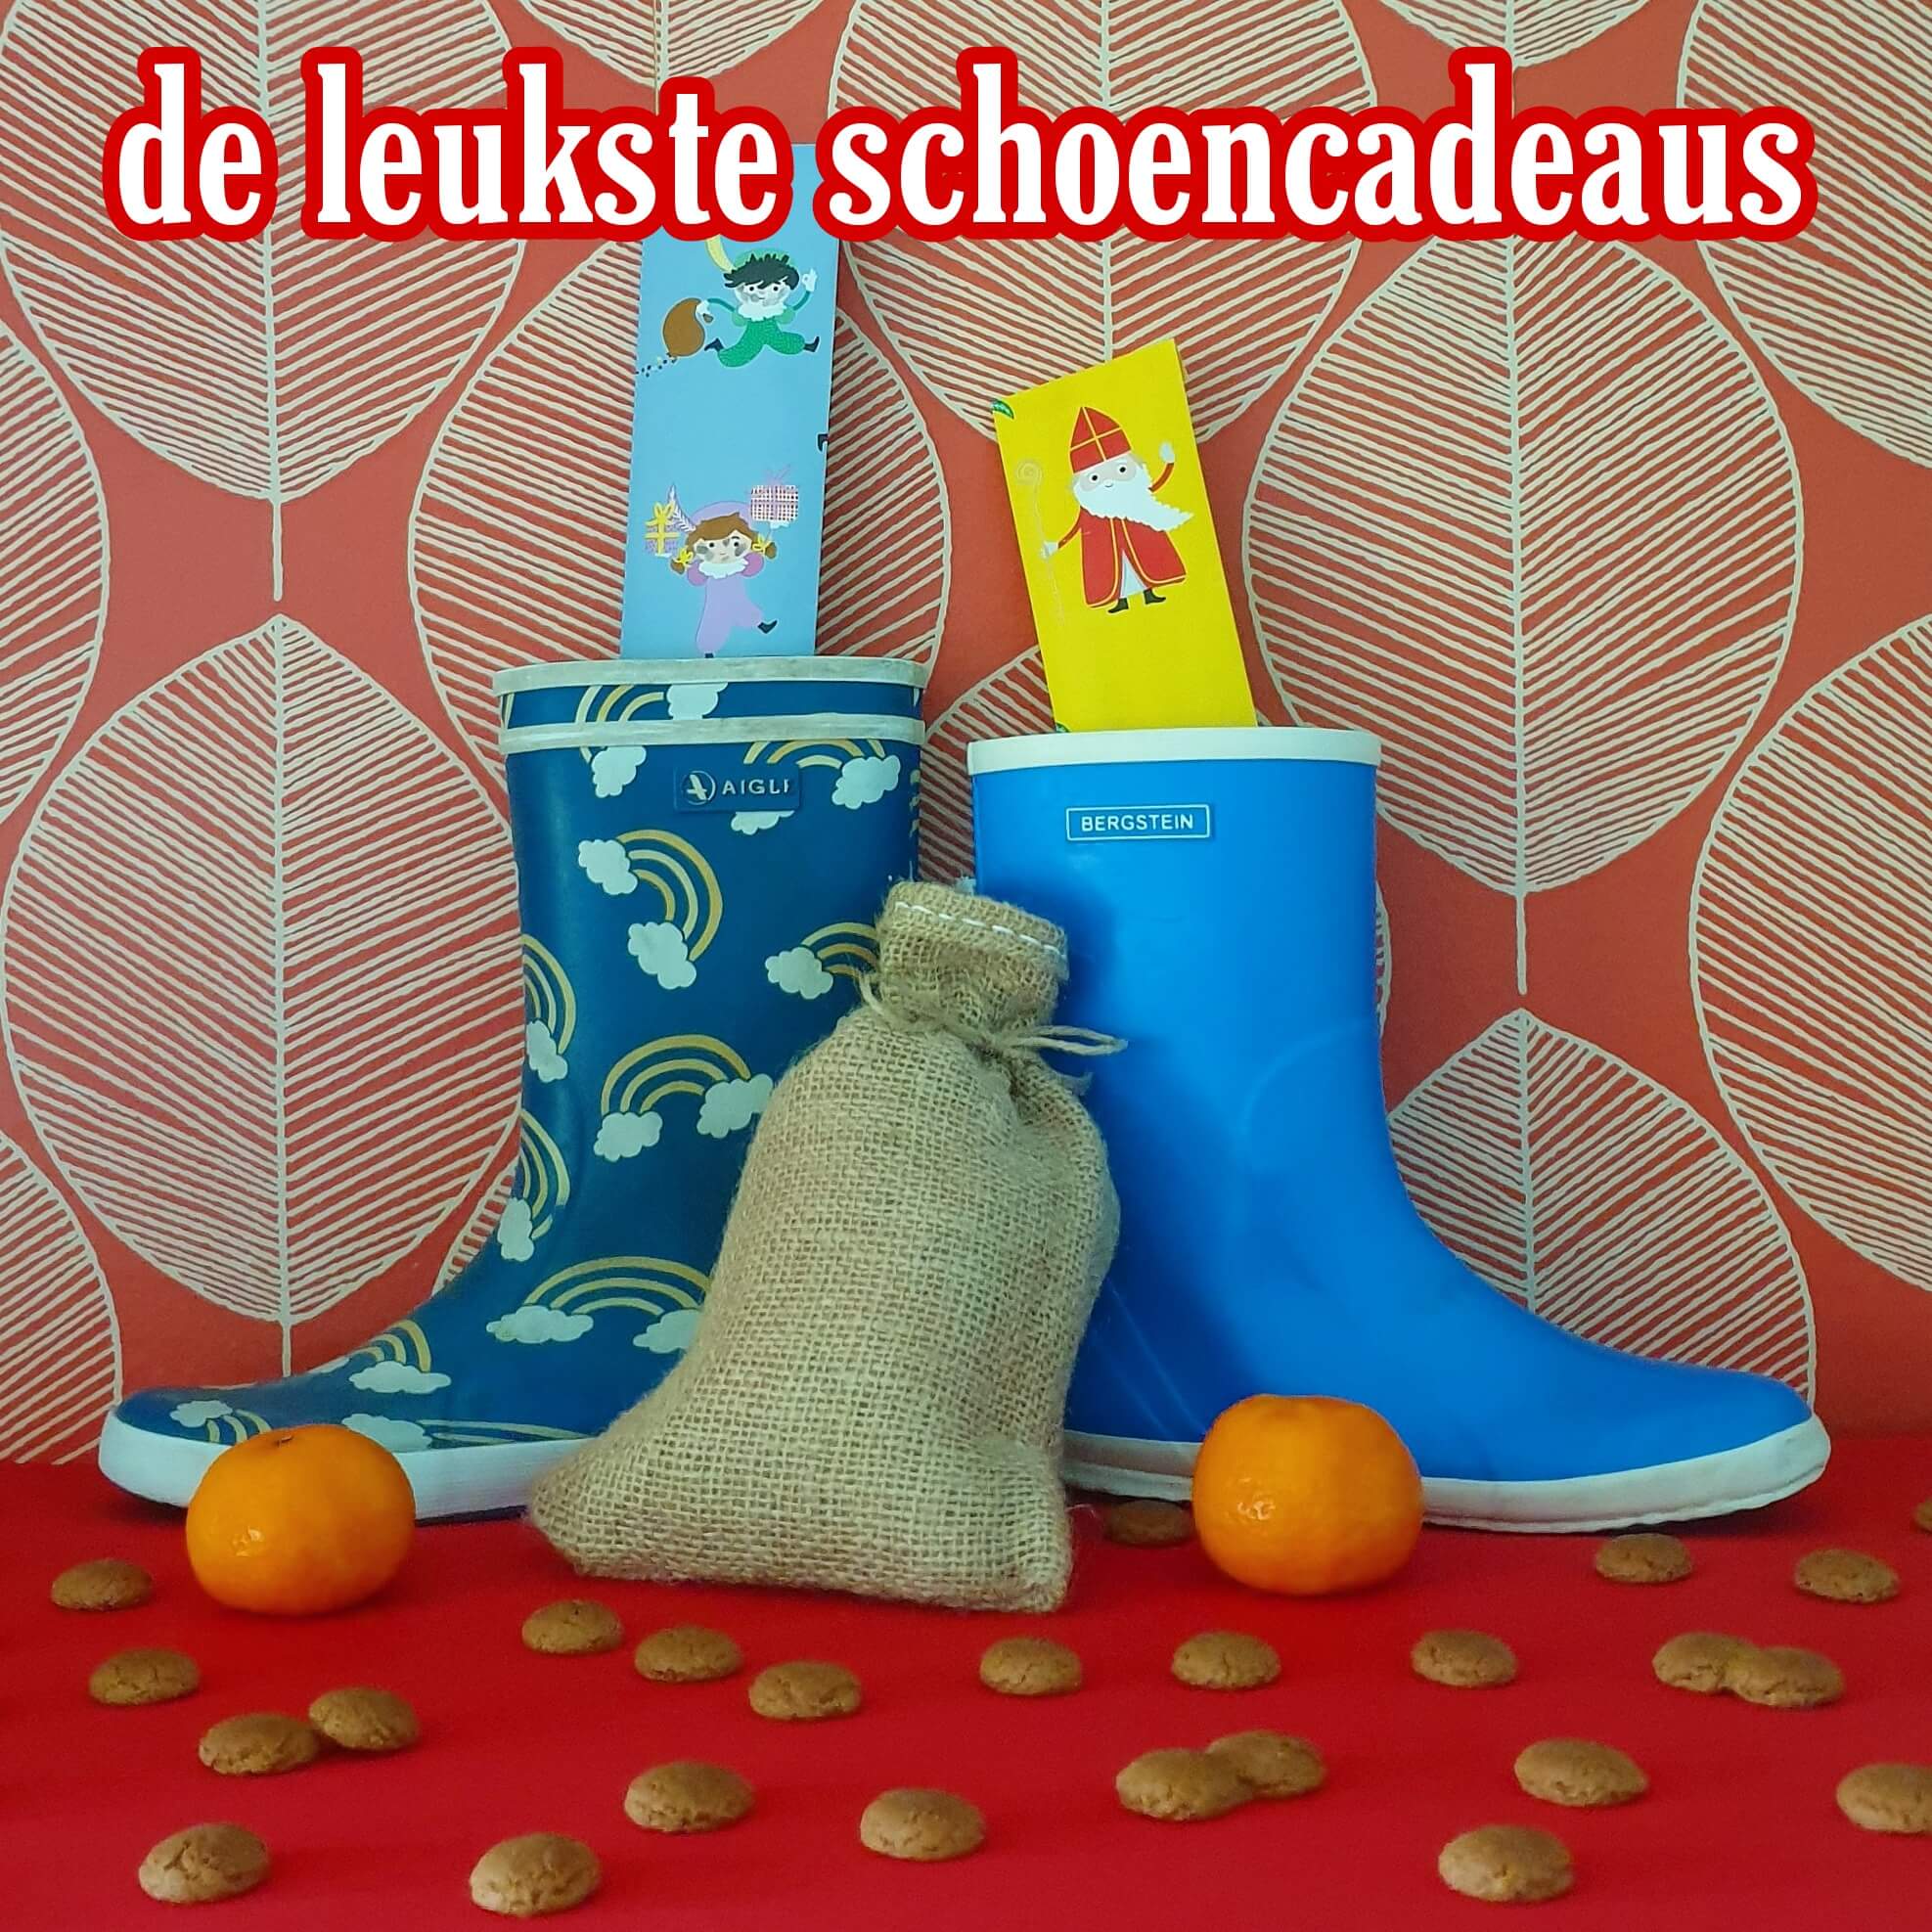 De favoriete schoencadeaus van Sinterklaas - Leuk met kids